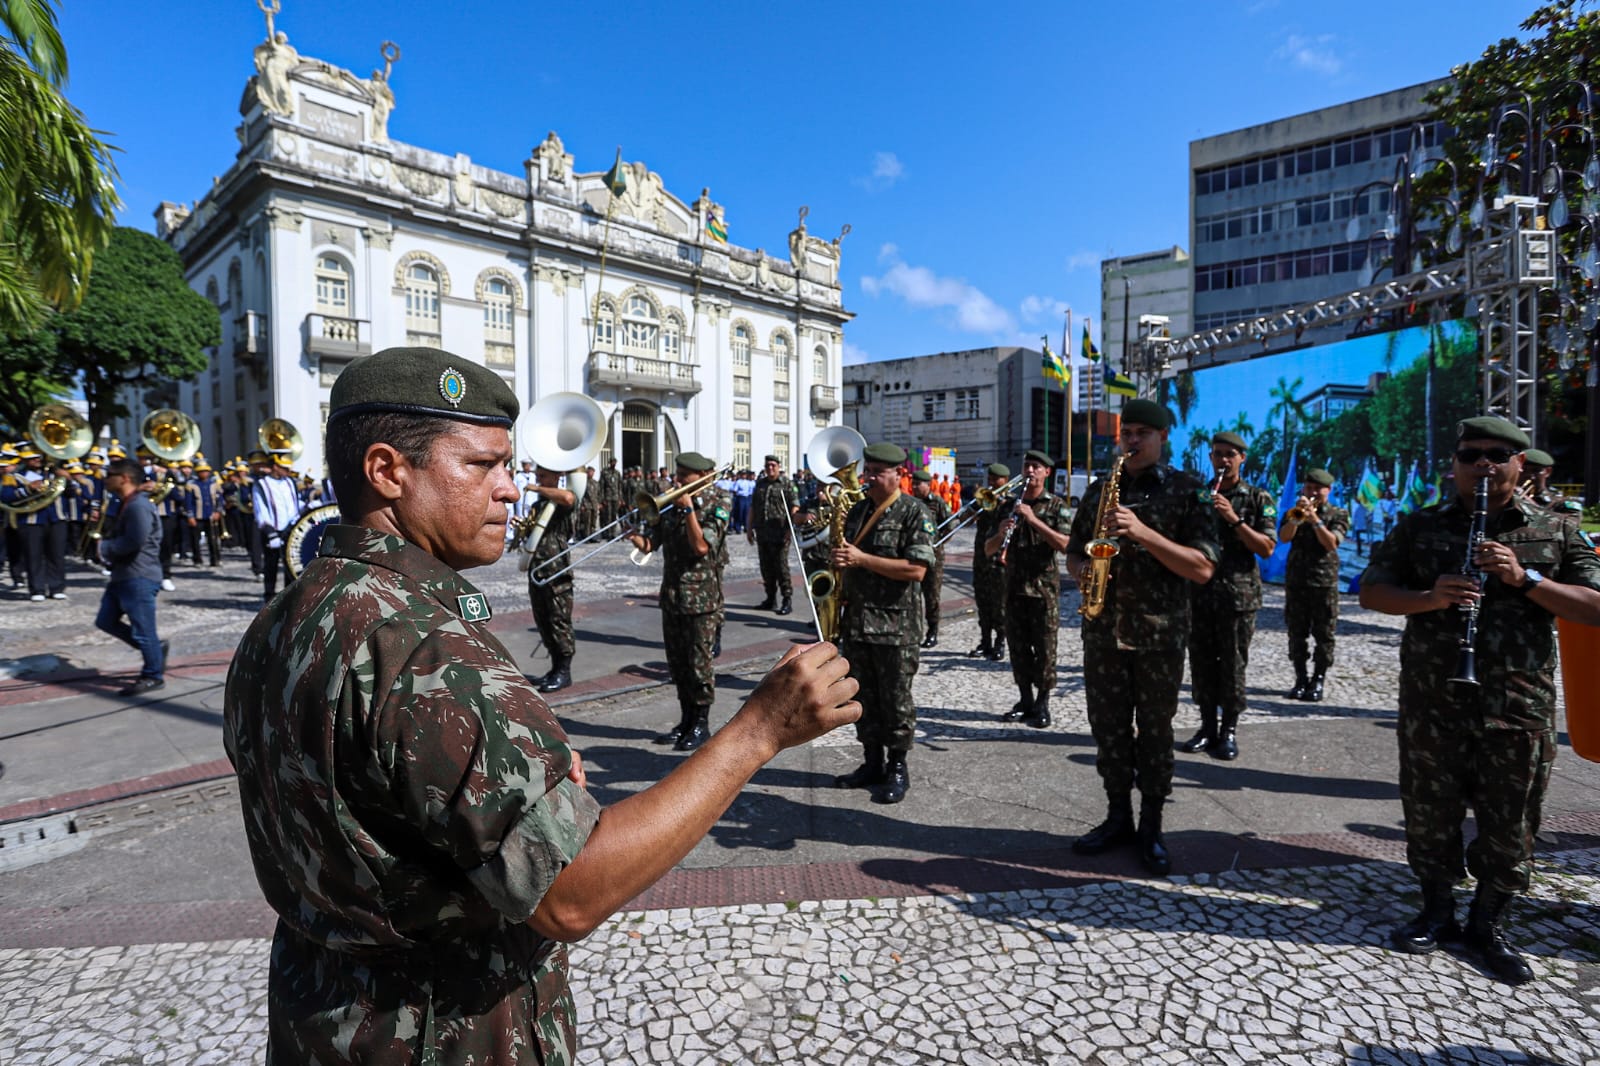 Exército Brasileiro promove exposição no RioMar Aracaju - O que é notícia  em Sergipe